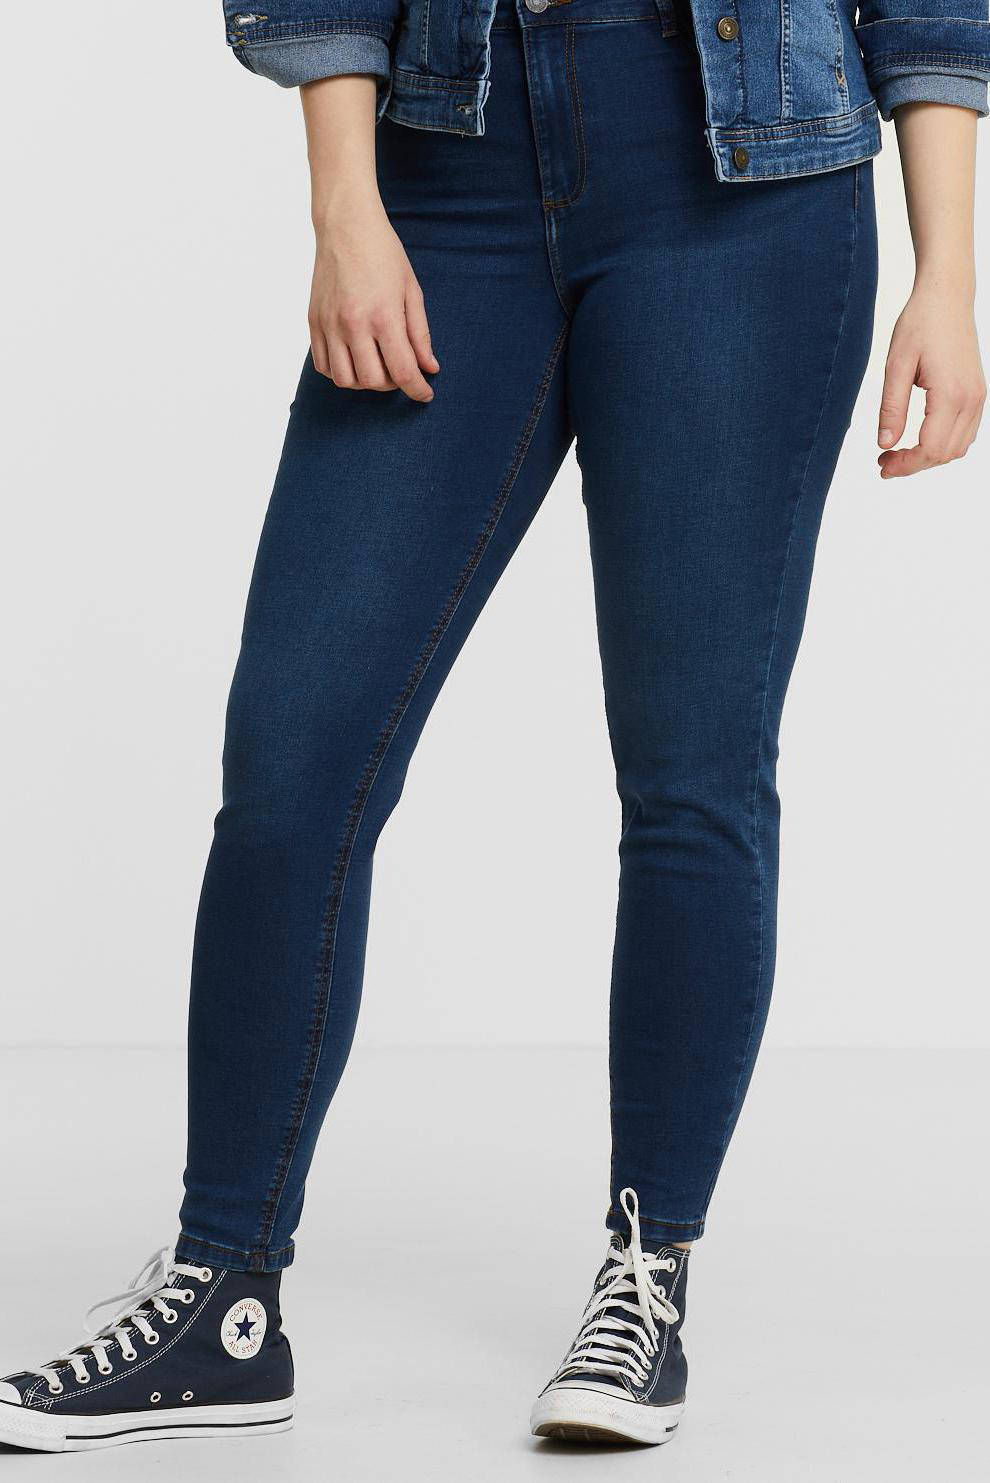 Noisy May Denim Callie Dames Kleding voor voor Strandkleding Skinny Jeans Met Hoge Taille in het Blauw 